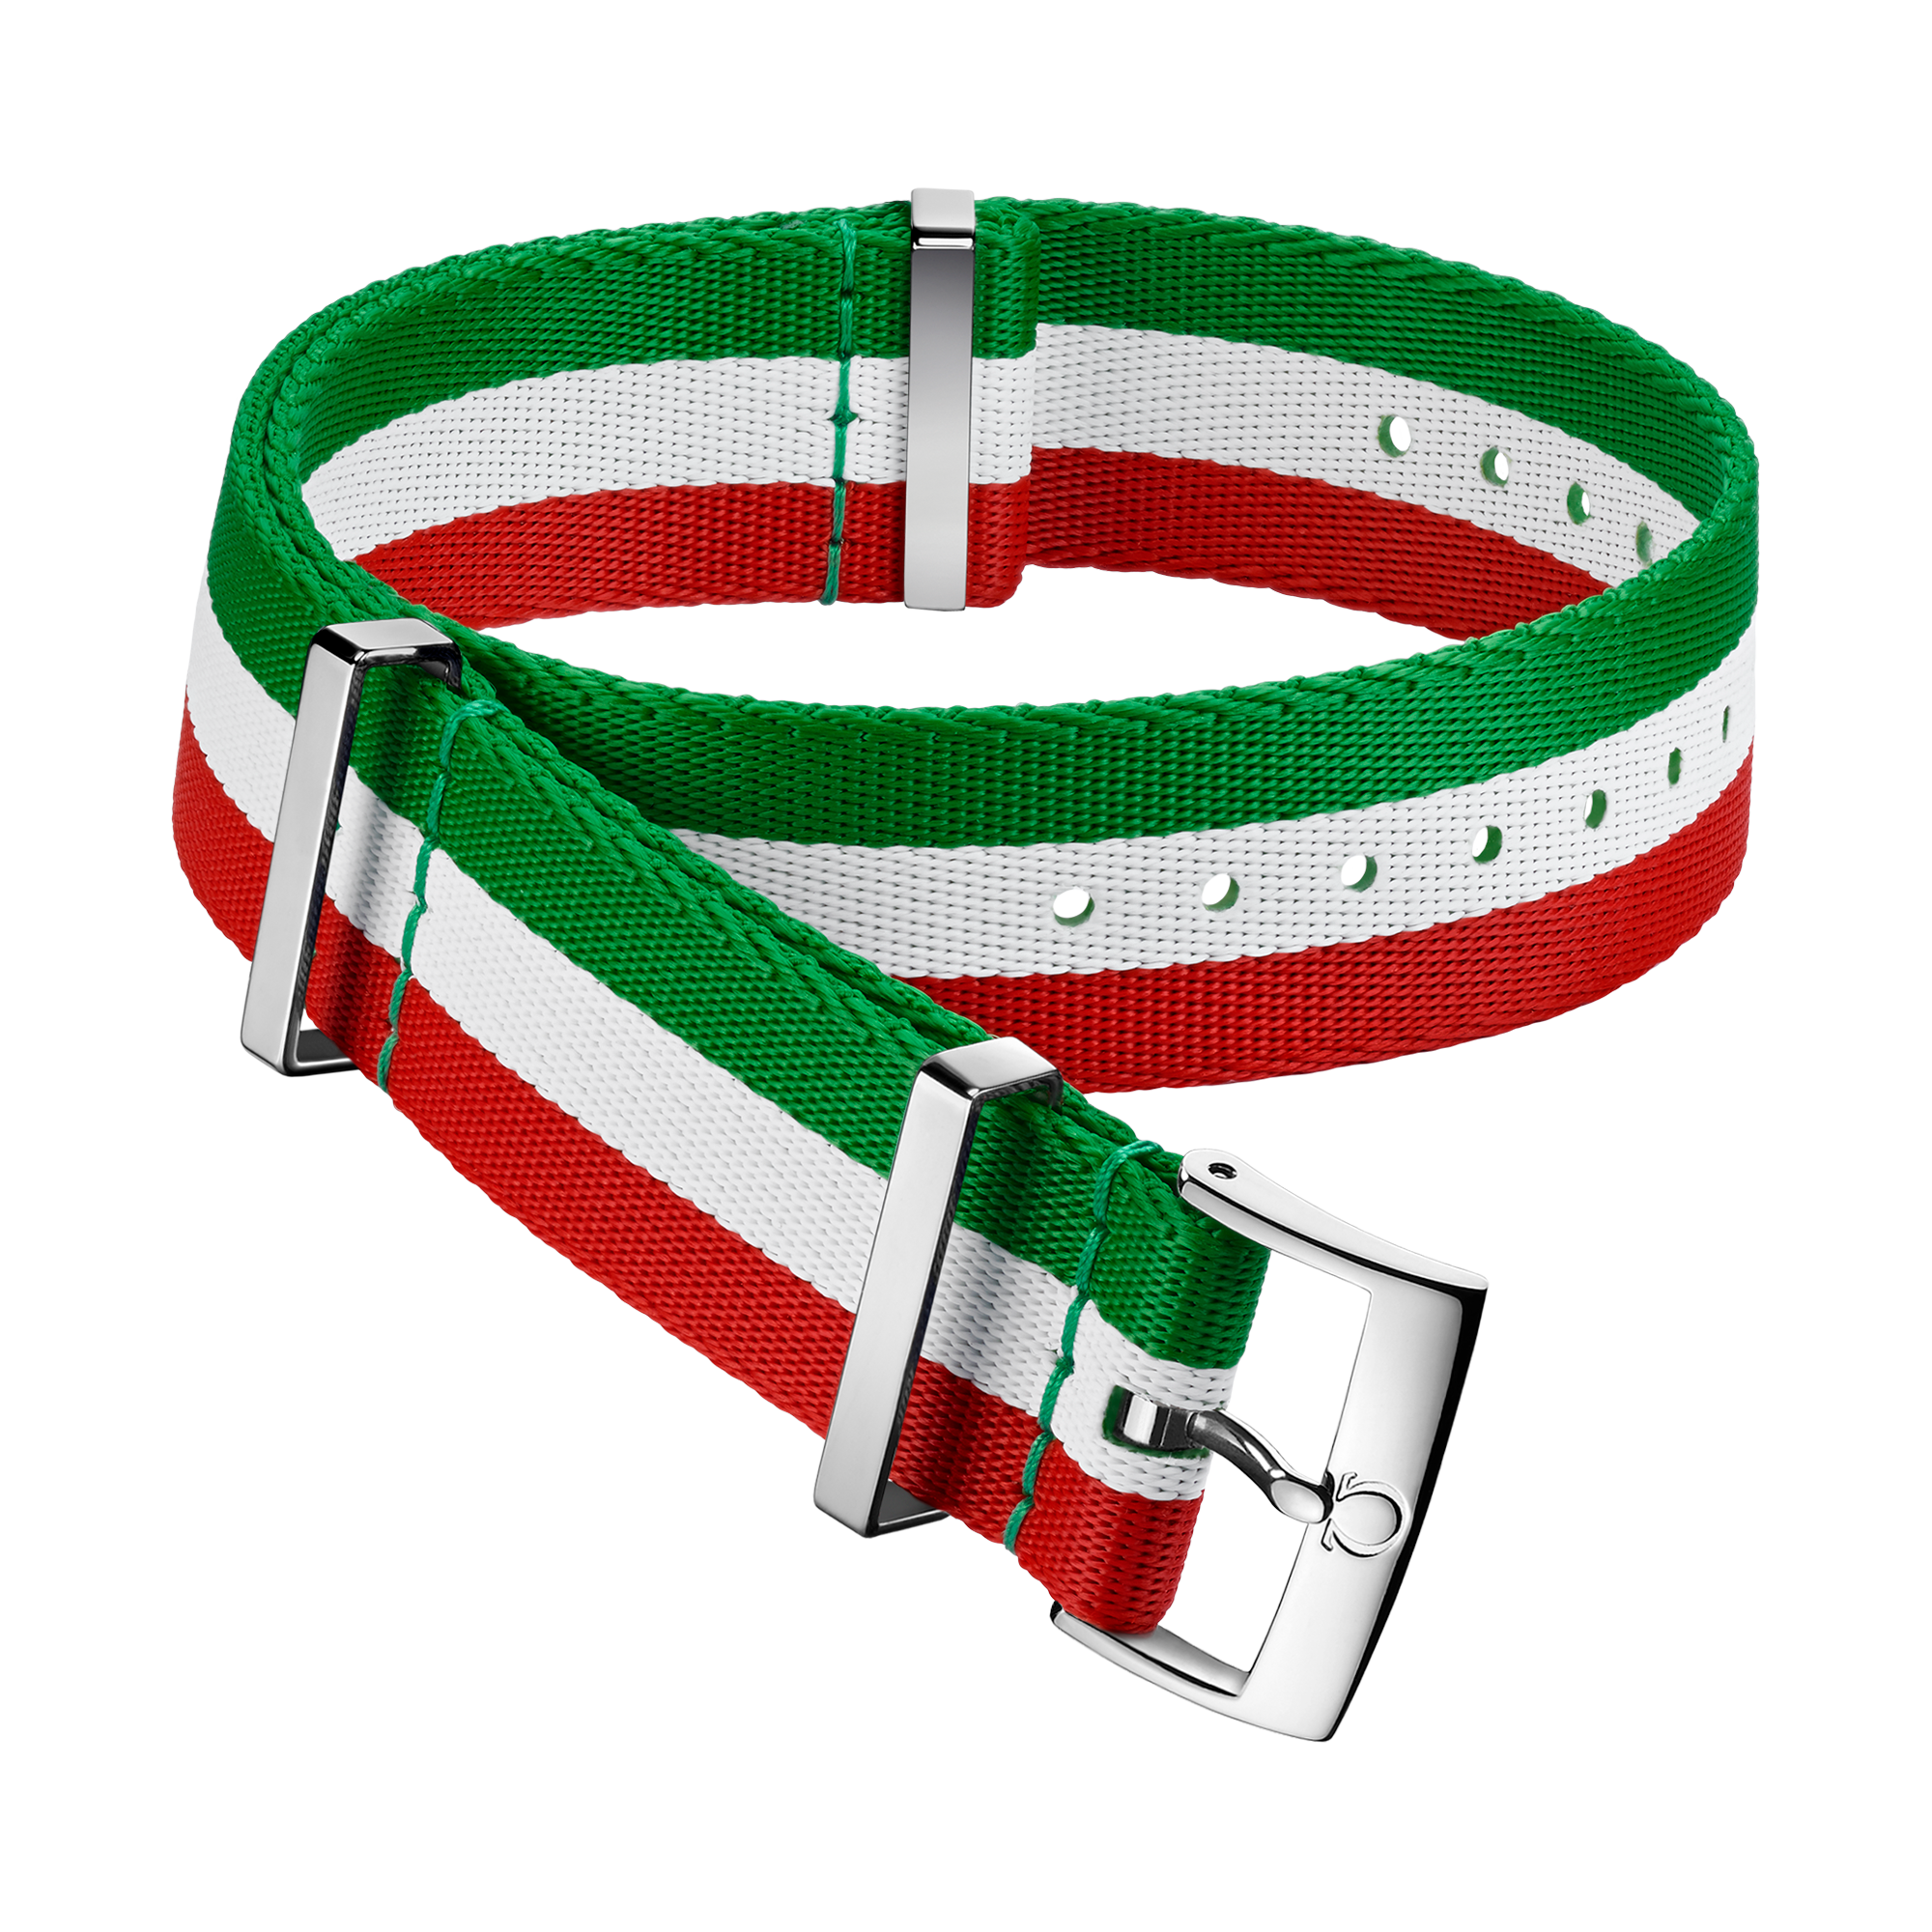 Cinturino NATO - Cinturino in poliammide verde, bianco e rosso con 3 strisce - 031CWZ010656w